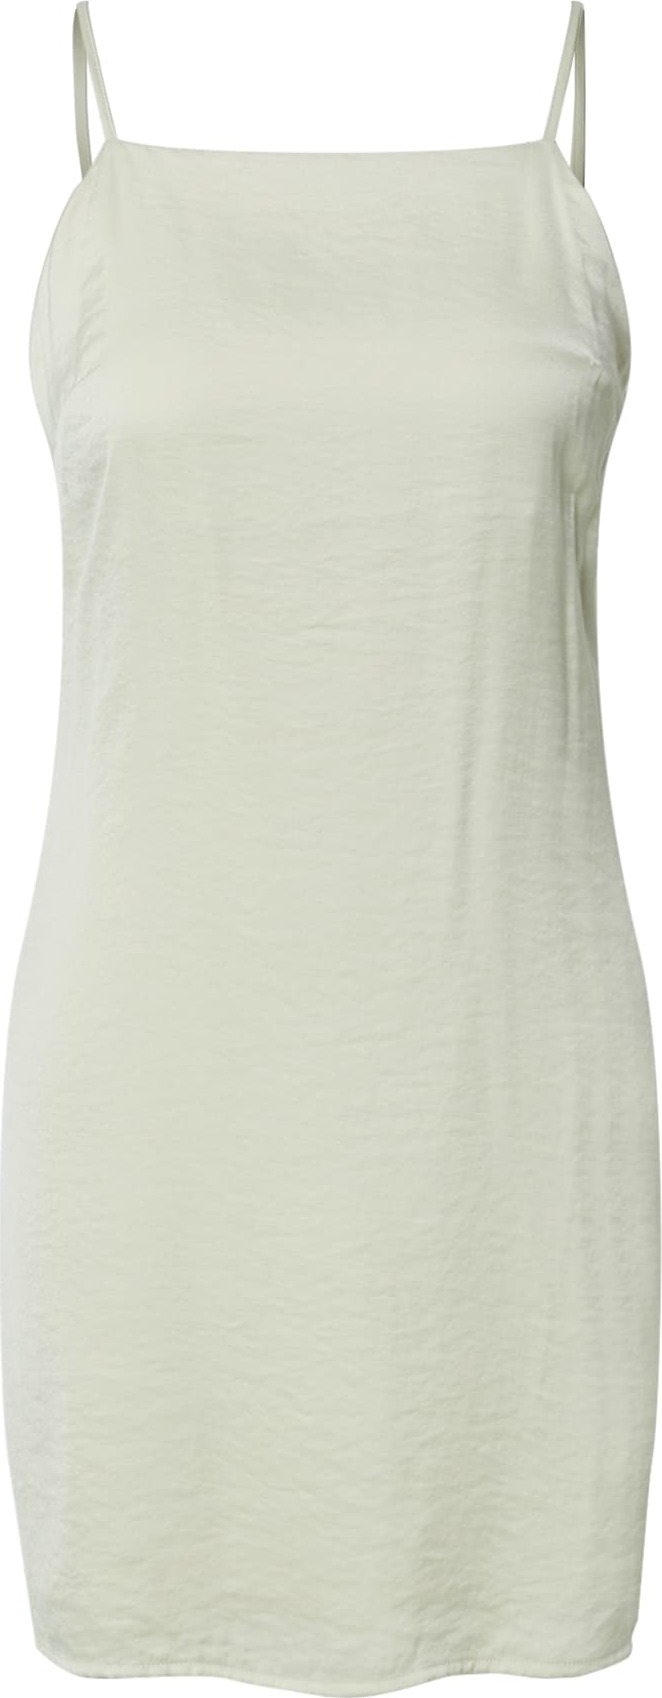 EDITED Letní šaty 'Jola' krémová